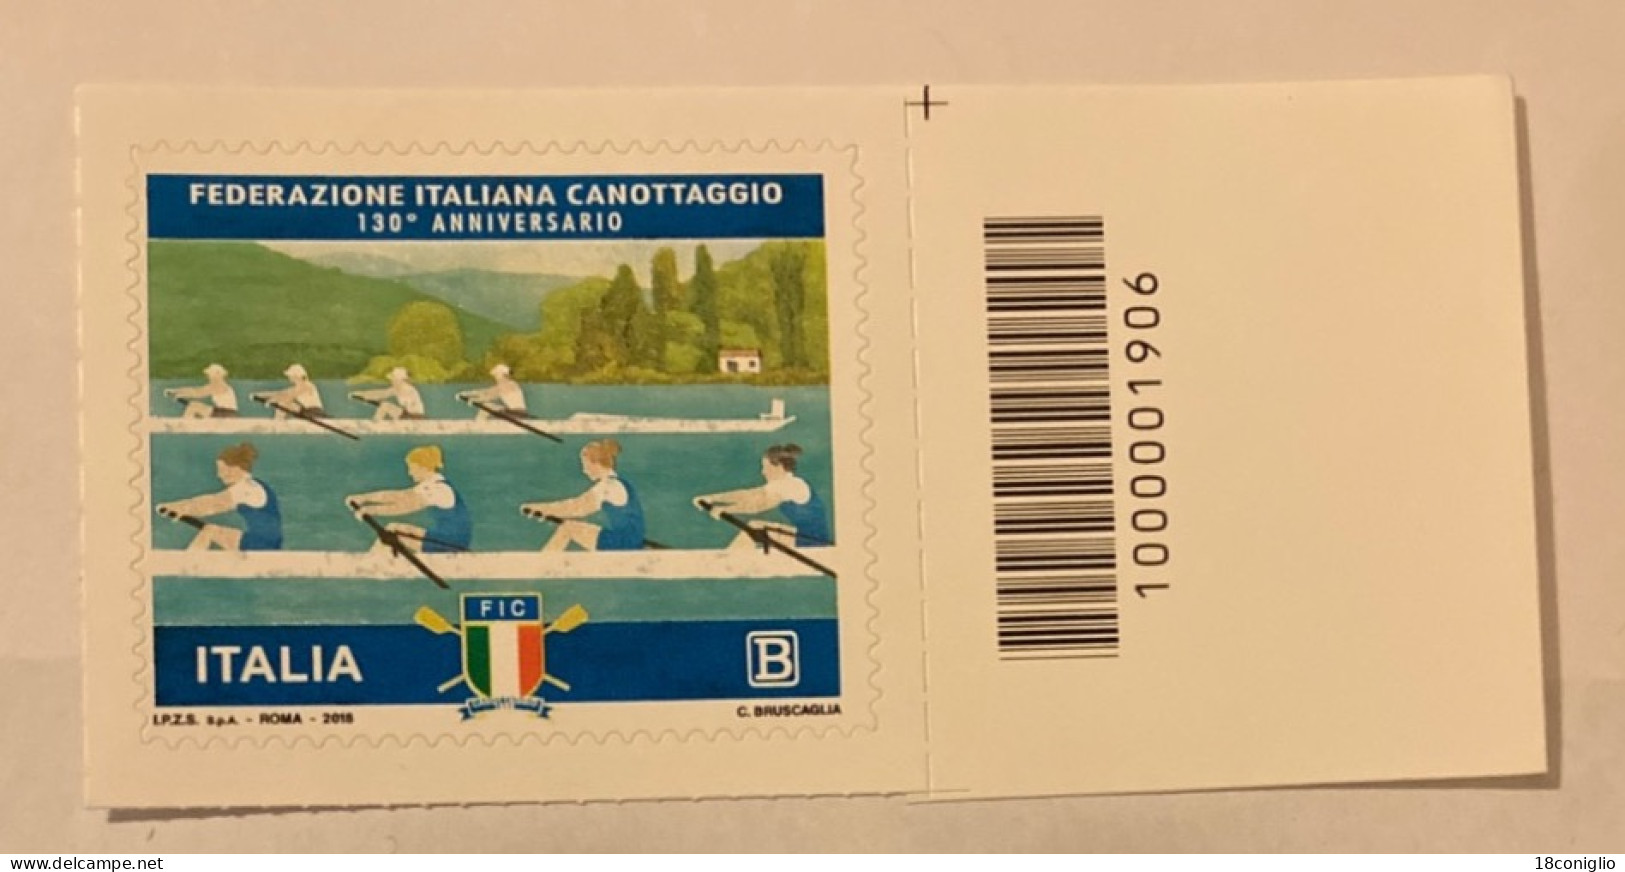 Italia 2018 Codice A Barre 1906 Federazione Italiana Canottaggio - Códigos De Barras